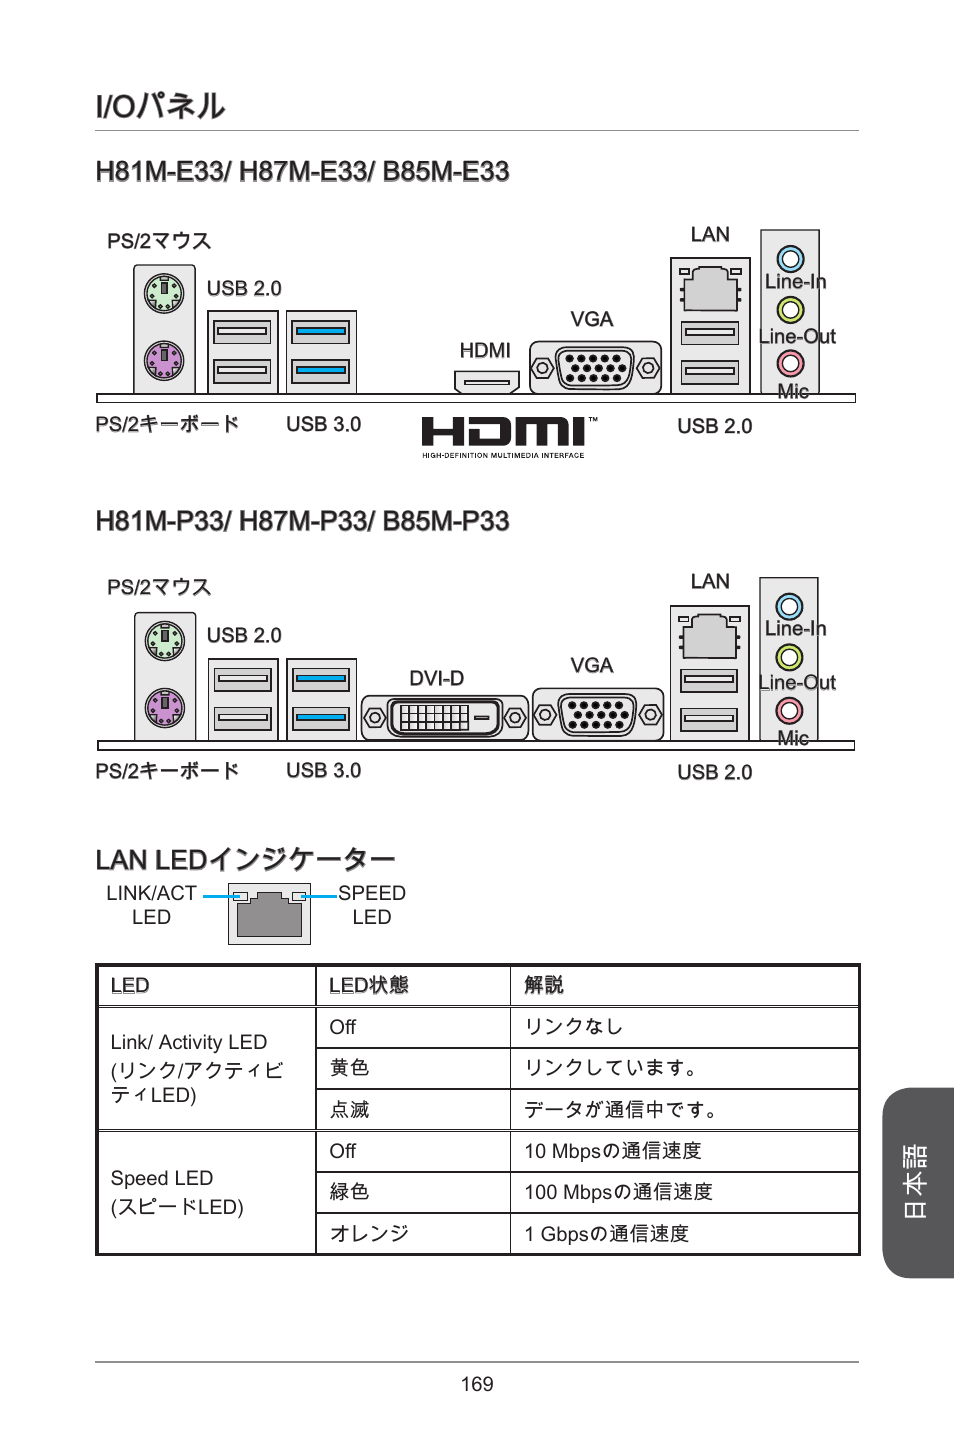 I/oパネル, Lan ledインジケーター | MSI B85M-P33 User Manual | Page 169 / 186 |  Original mode